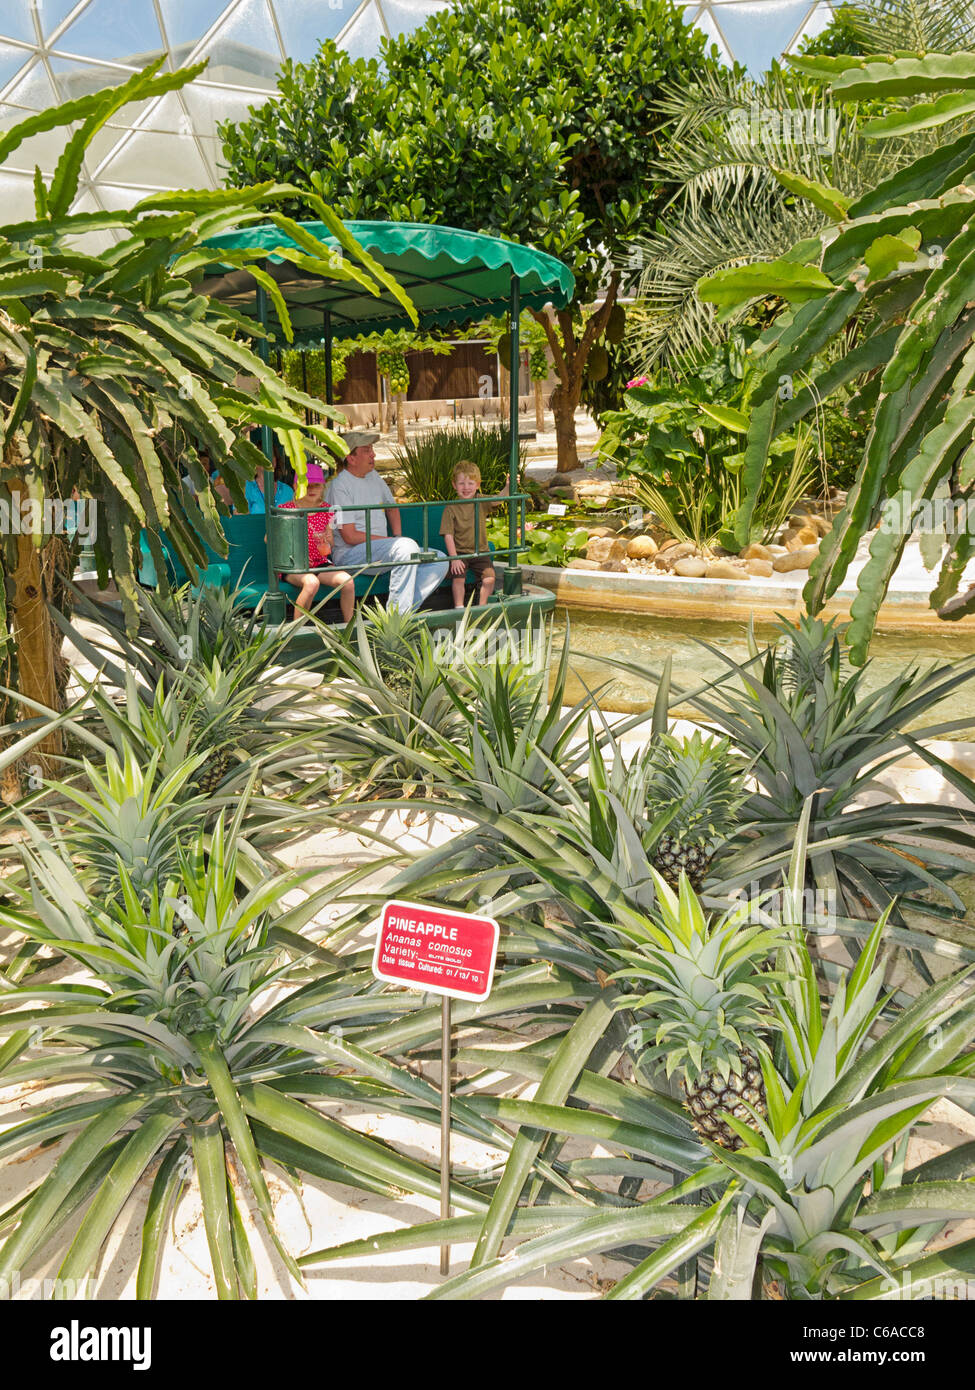 Los turistas en viajes en barco pasado pinepple plantas en Disney World's "Vivir con la tierra gira en el Land Pavilion, Epcot, Florida Foto de stock